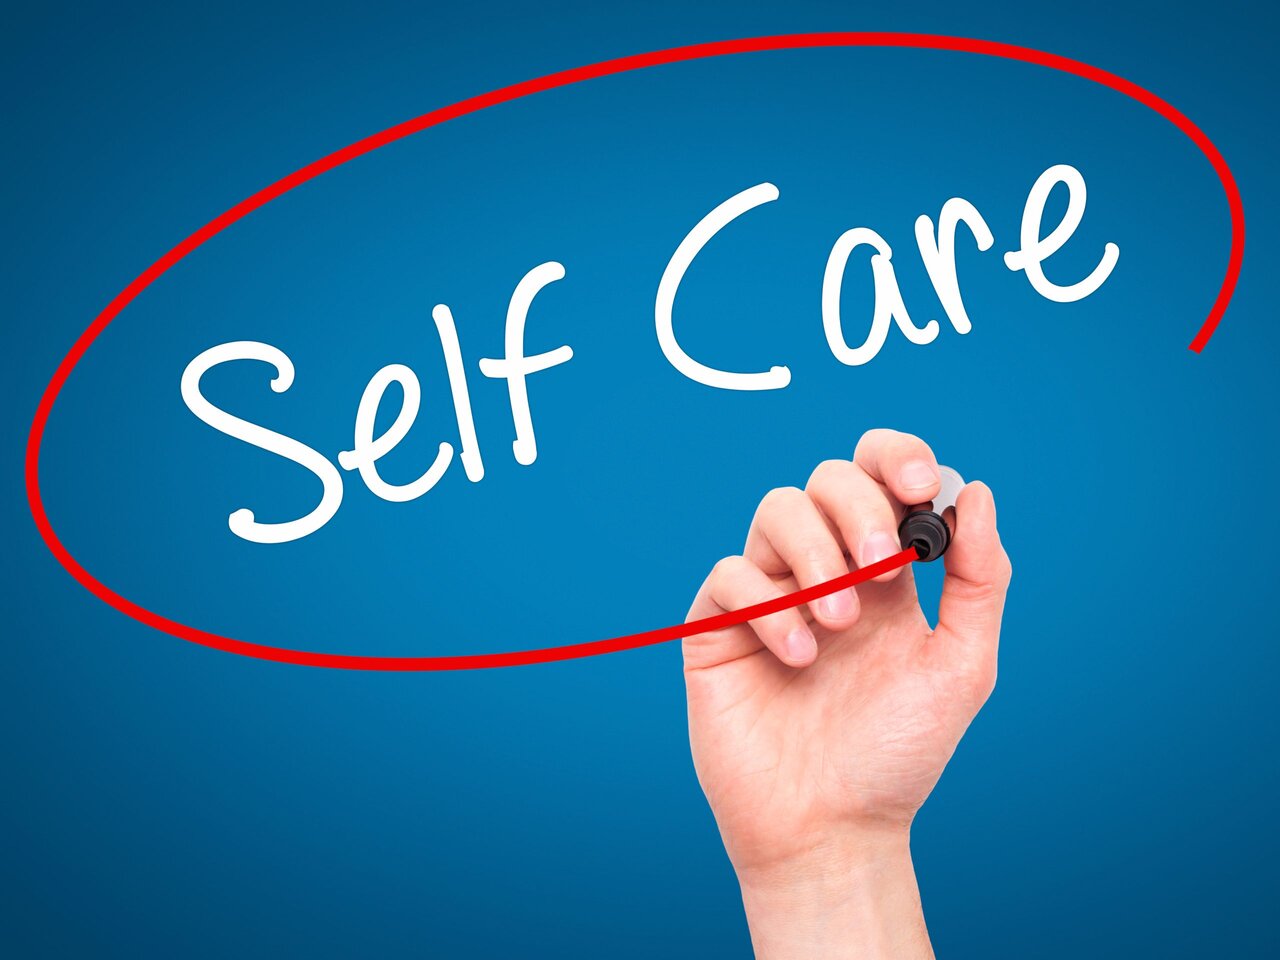 روز جهانی خودمراقبتی International Self-Care Day + تاریخچه، شعار و پوستر